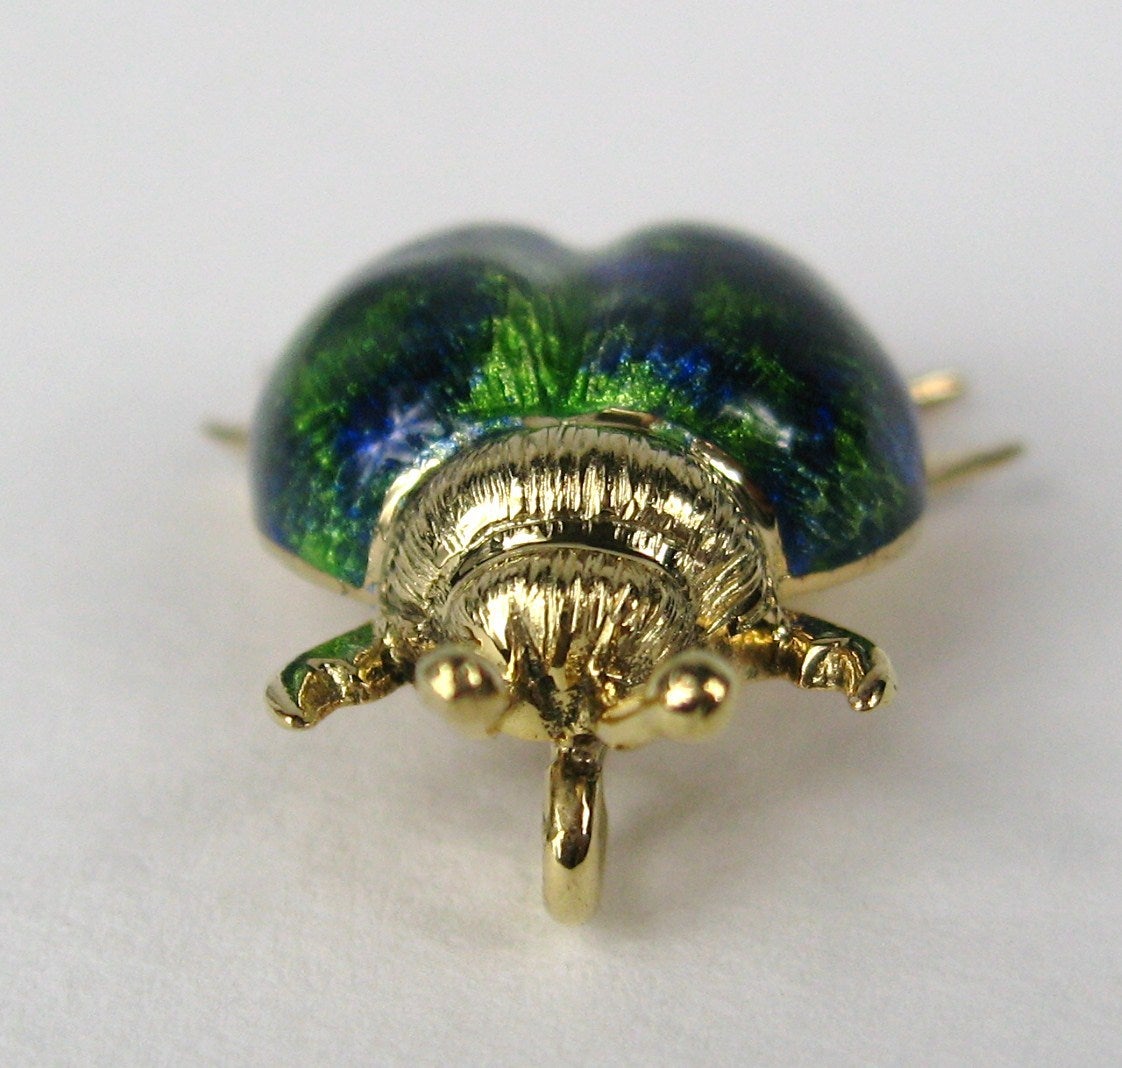 Wunderschöne grüne und blaue Emaillierung  auf diesem Käfer-Anhänger. Hergestellt aus 14K Gold. Maße: 1